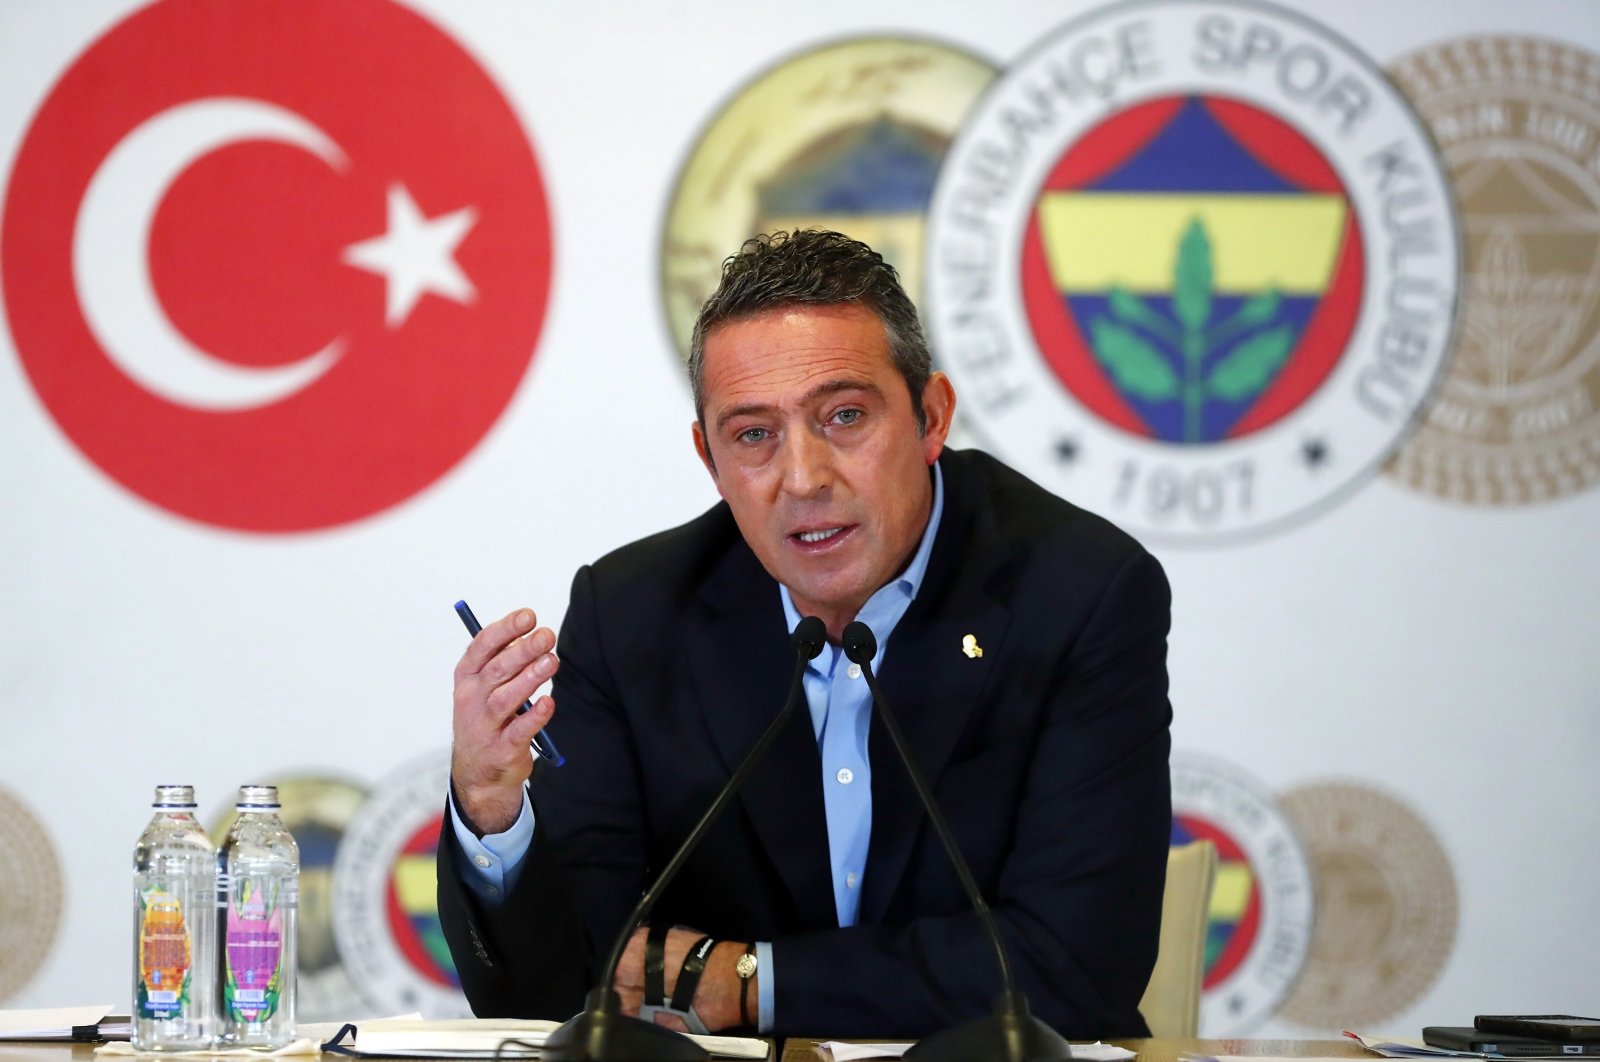 Kekeringan trofi Fenerbahçe terus berlanjut, 5 tahun masa pemerintahan ‘mogul’ Ali Koç